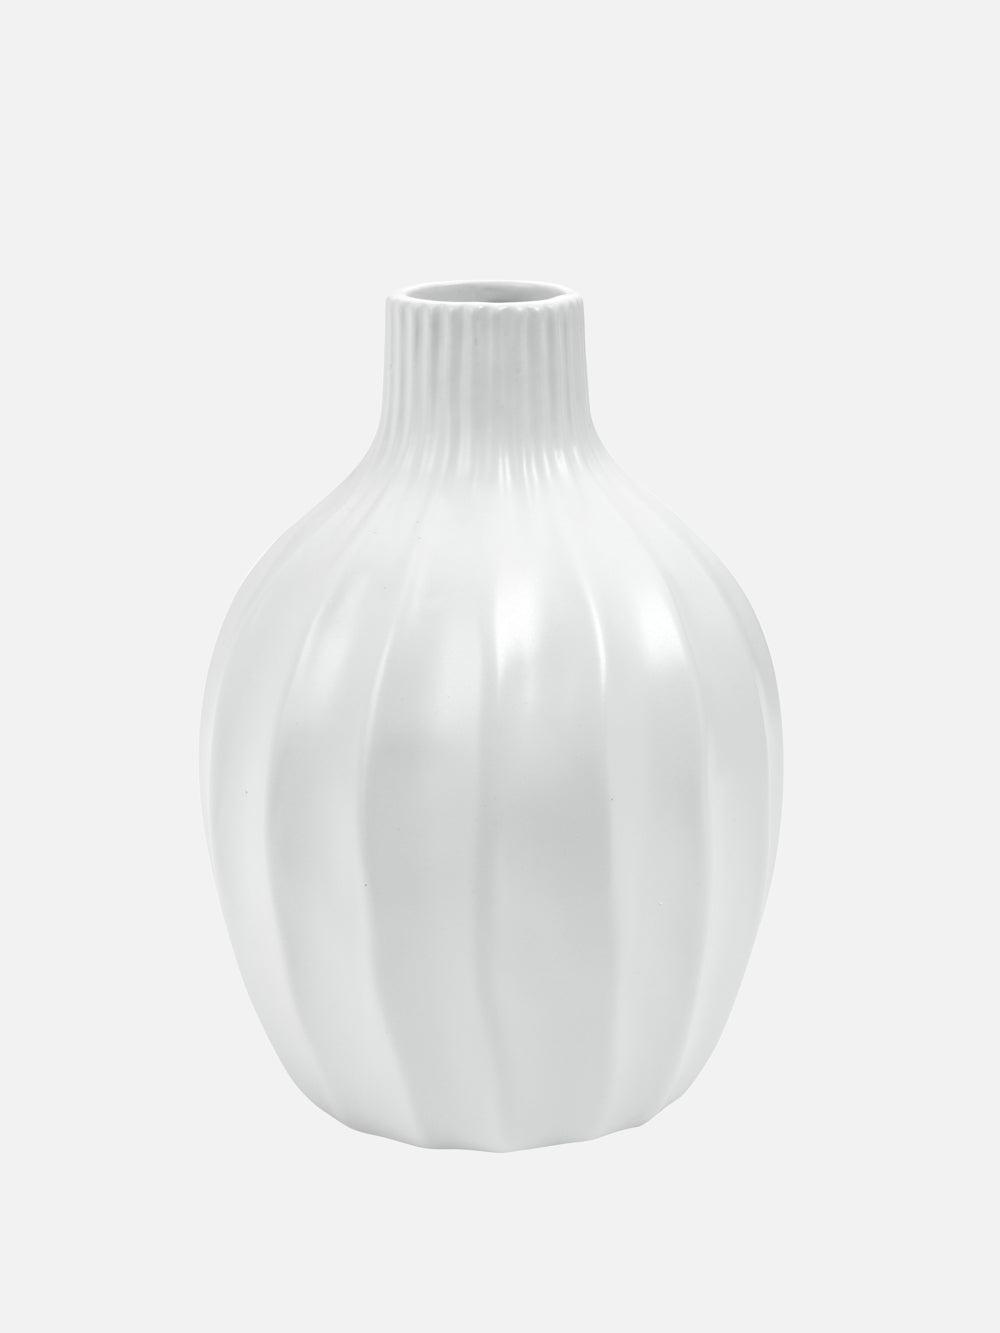 Venus Ceramic Vase